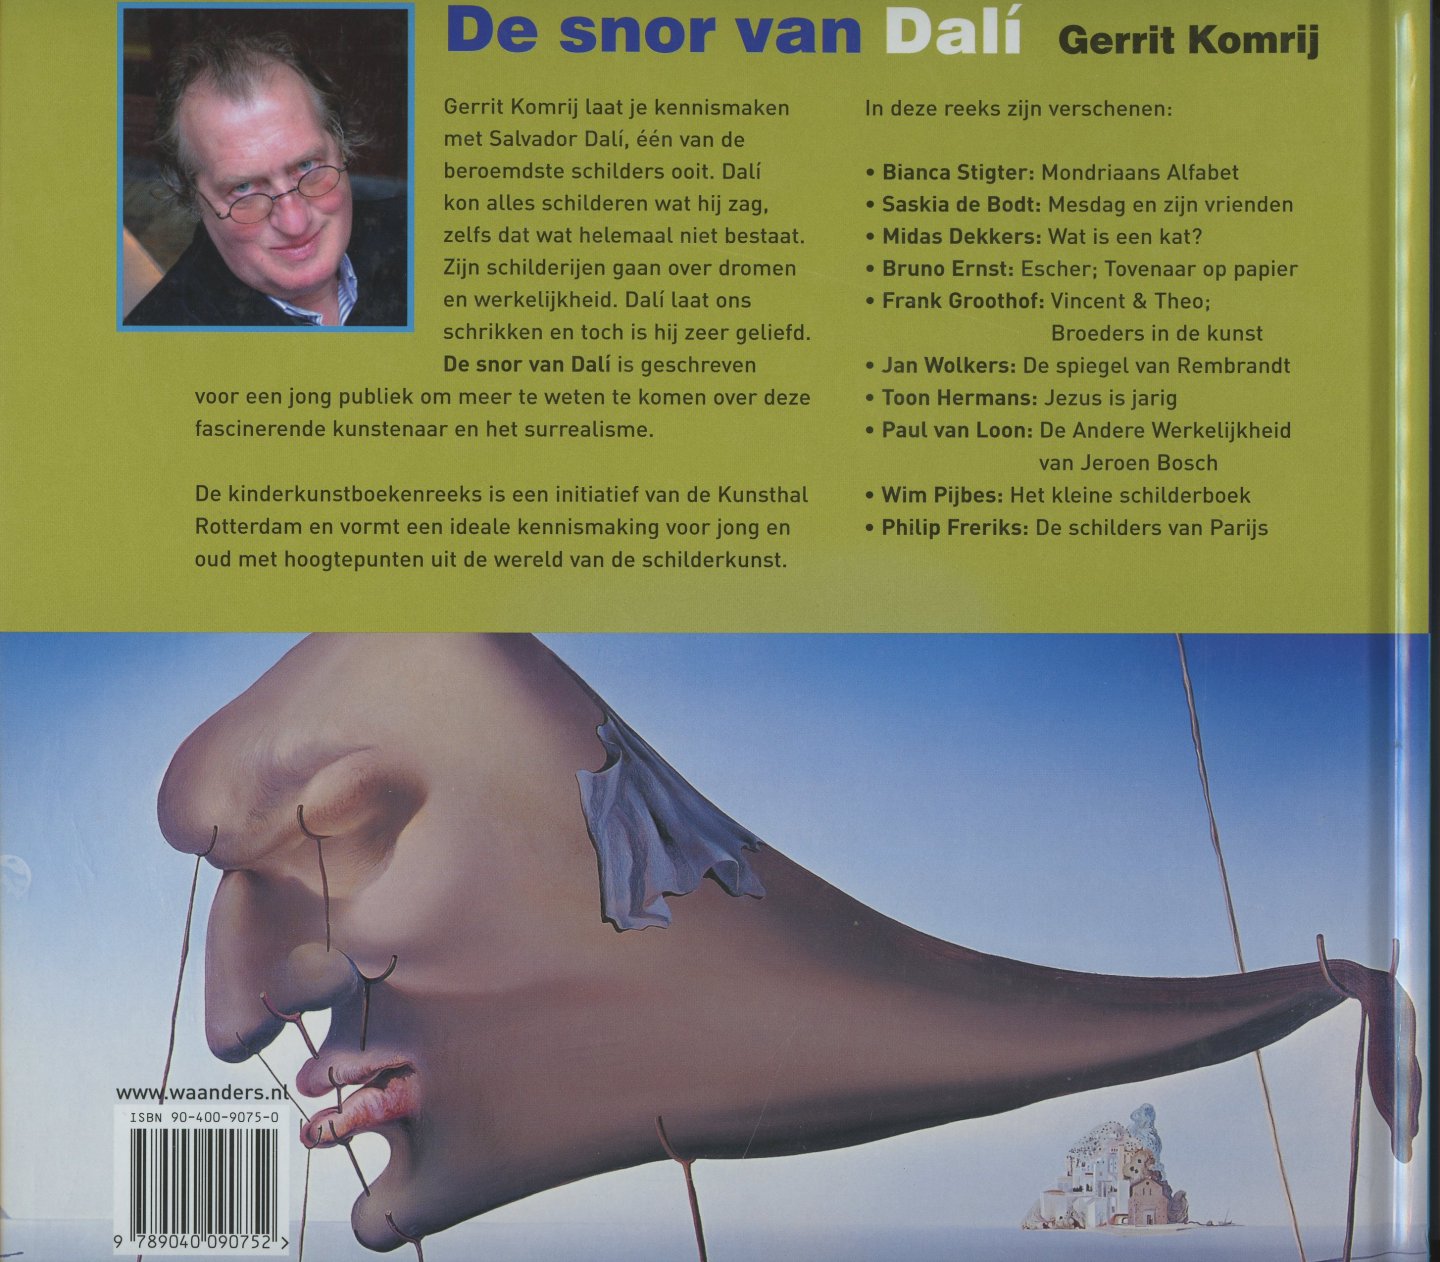 Komrij, Gerrit - De snor van Dalí